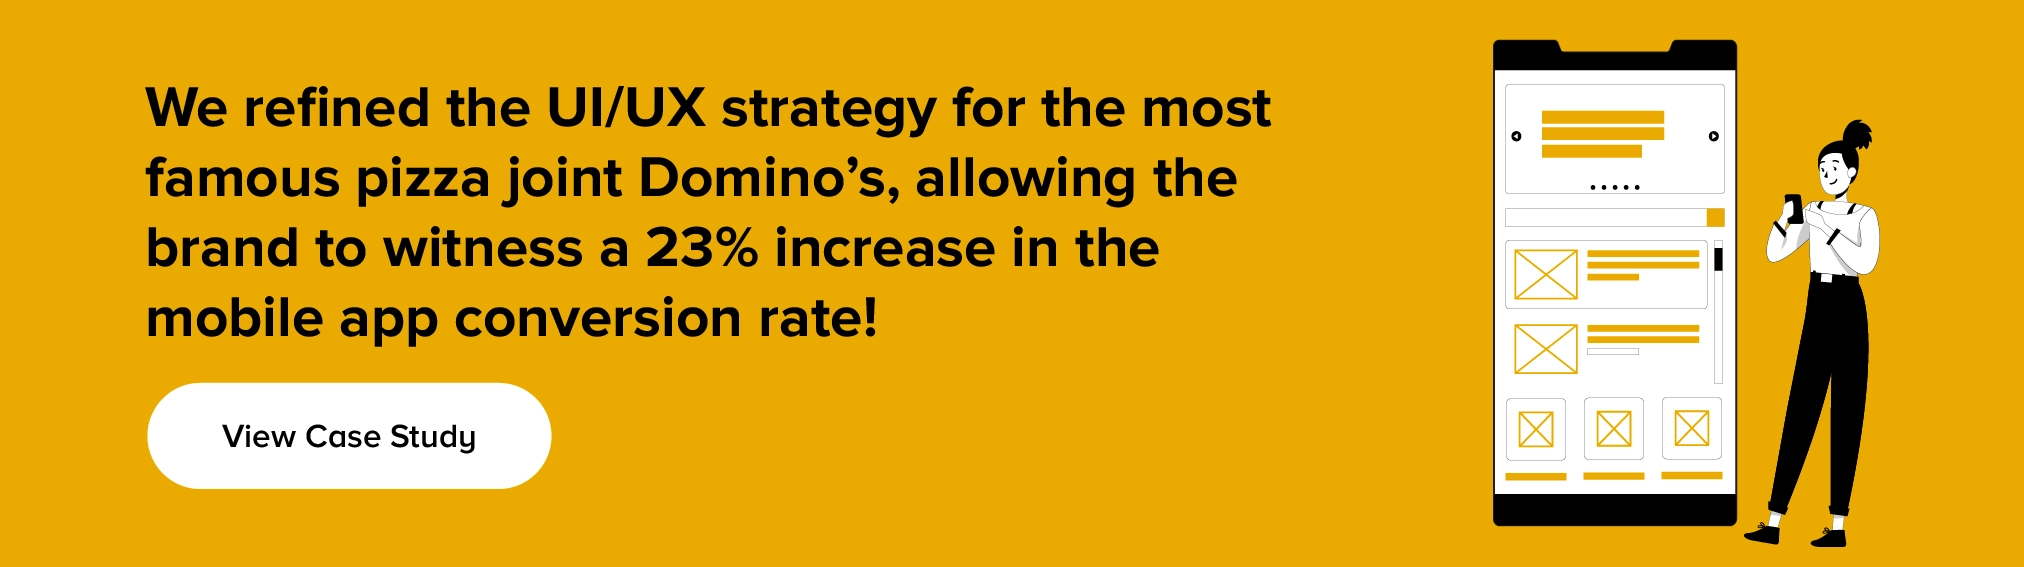 Temukan bagaimana kami menyempurnakan strategi UI/UX untuk kedai pizza Domino's